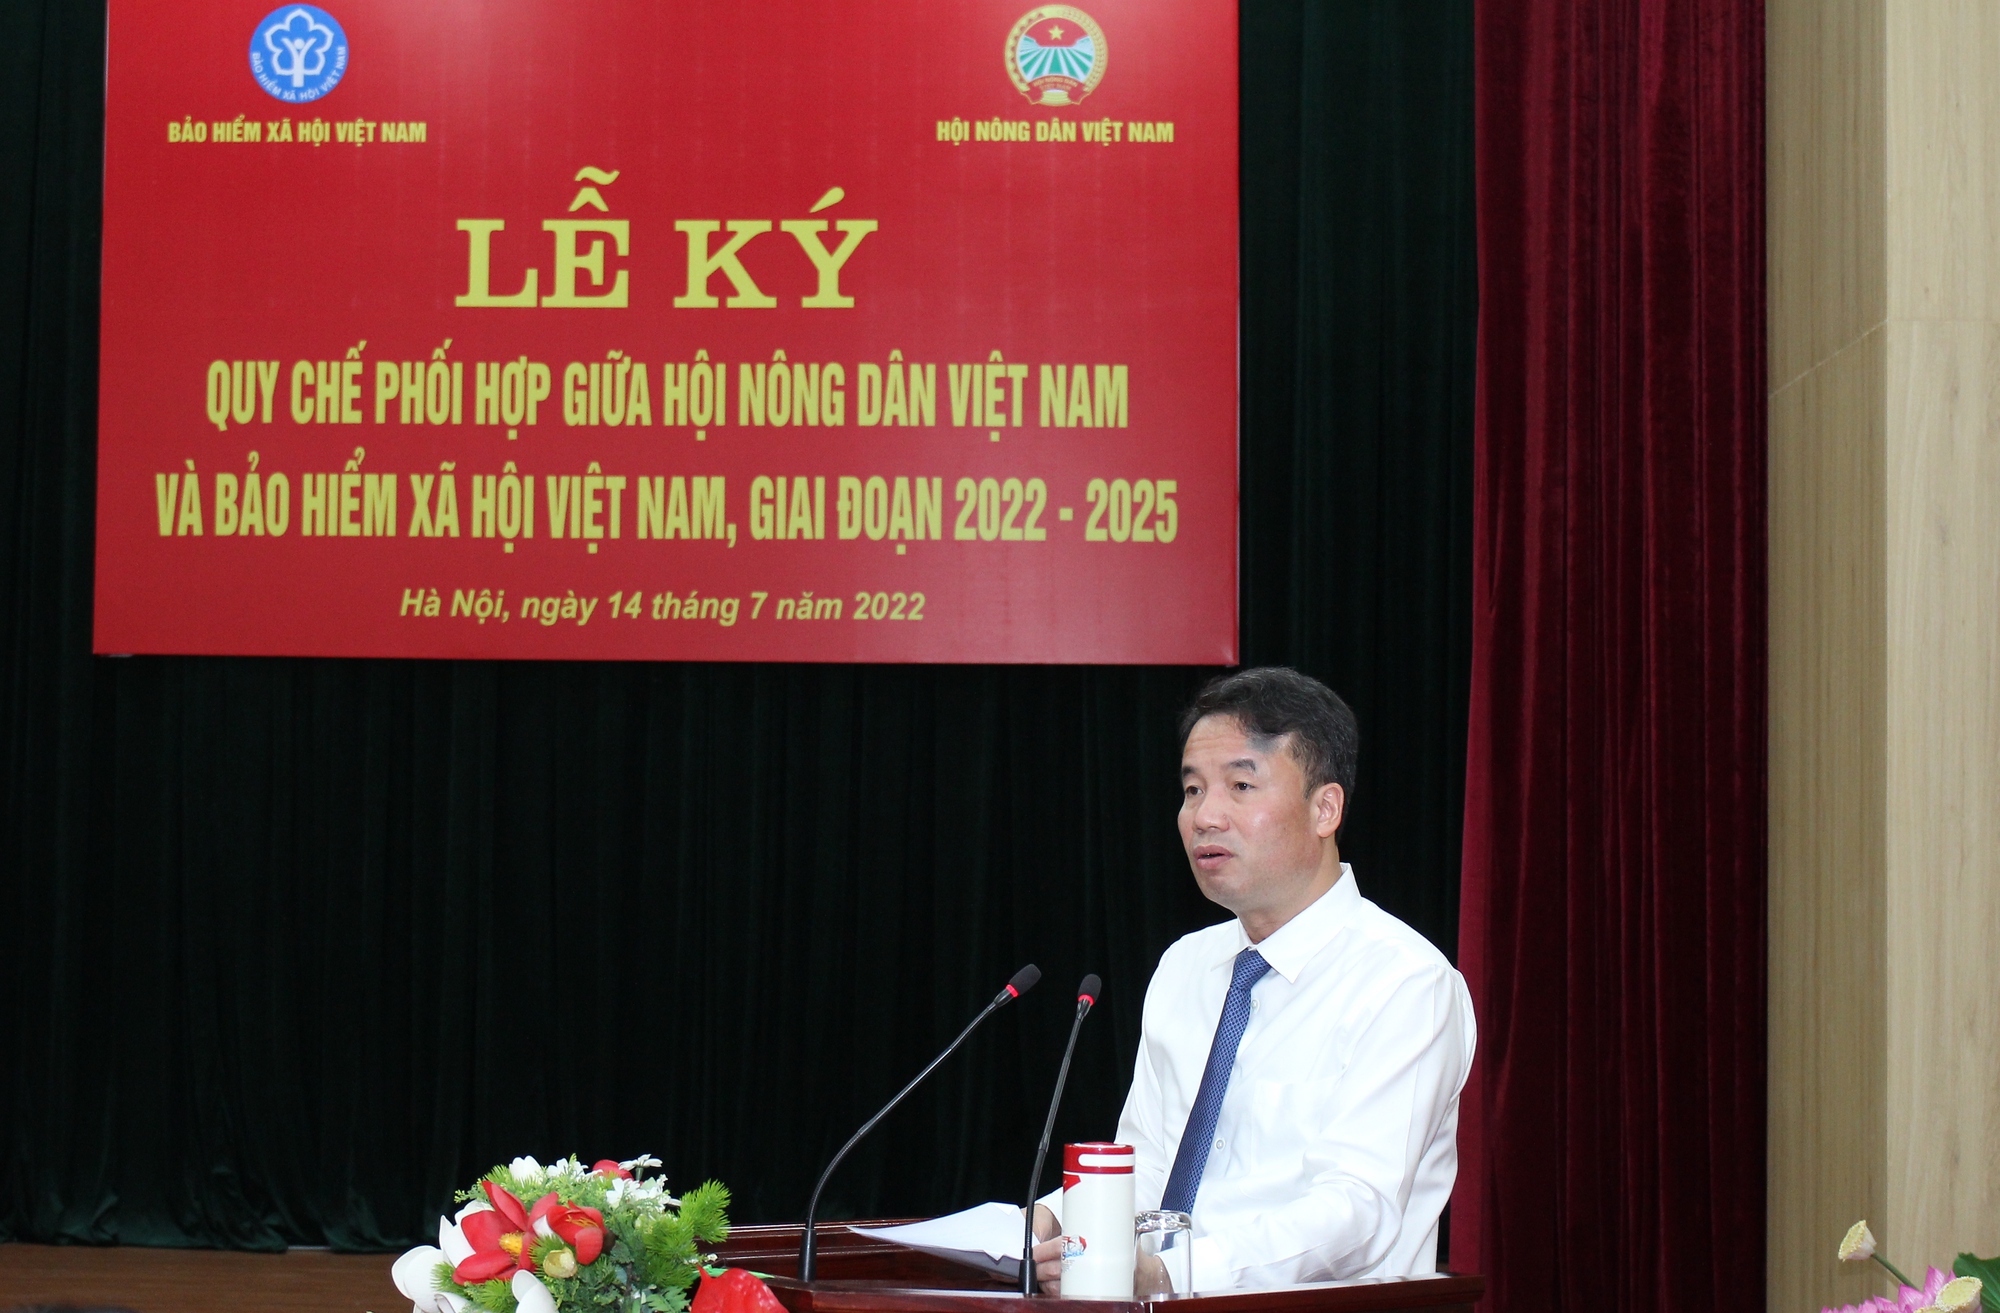 Hội Nông dân Việt Nam và Bảo hiểm xã hội Việt Nam ký quy chế phối hợp giai đoạn 2022-2025 - Ảnh 3.